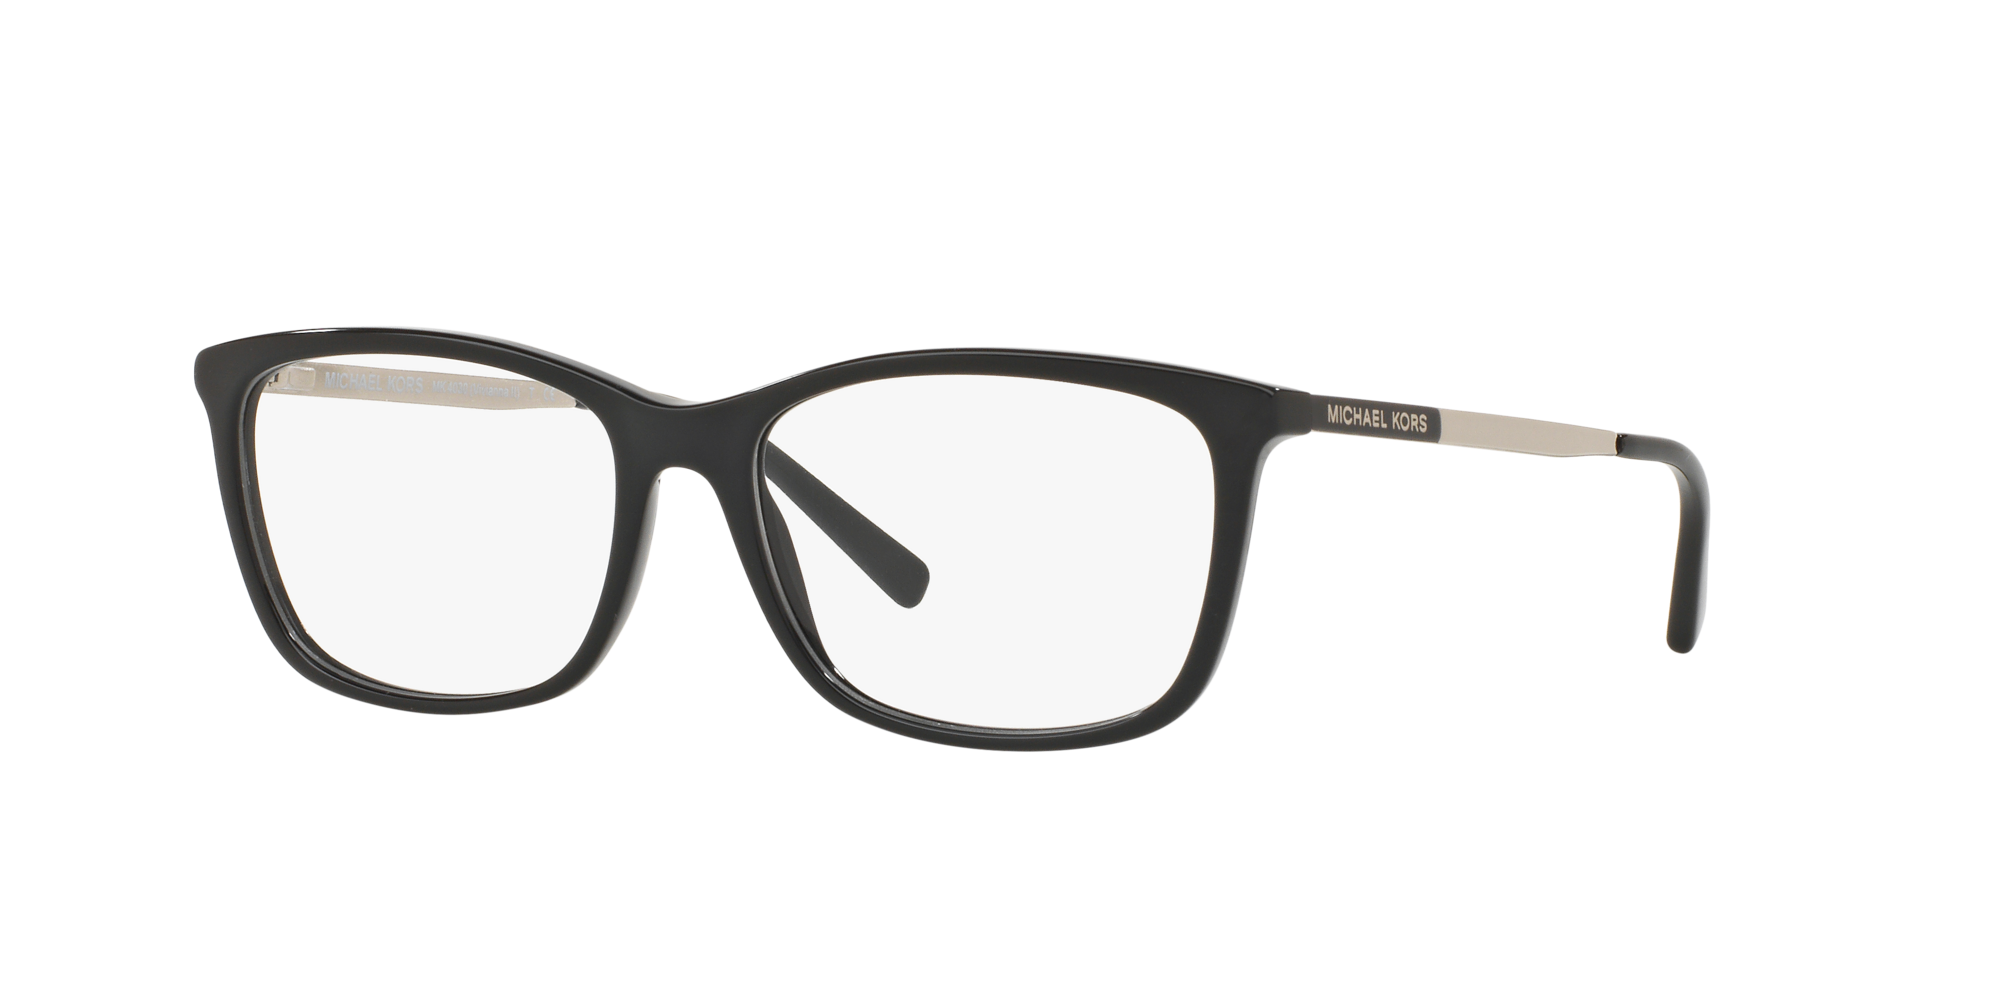 Designer Glasses  Frames  Eyeglasses Online  OPSM